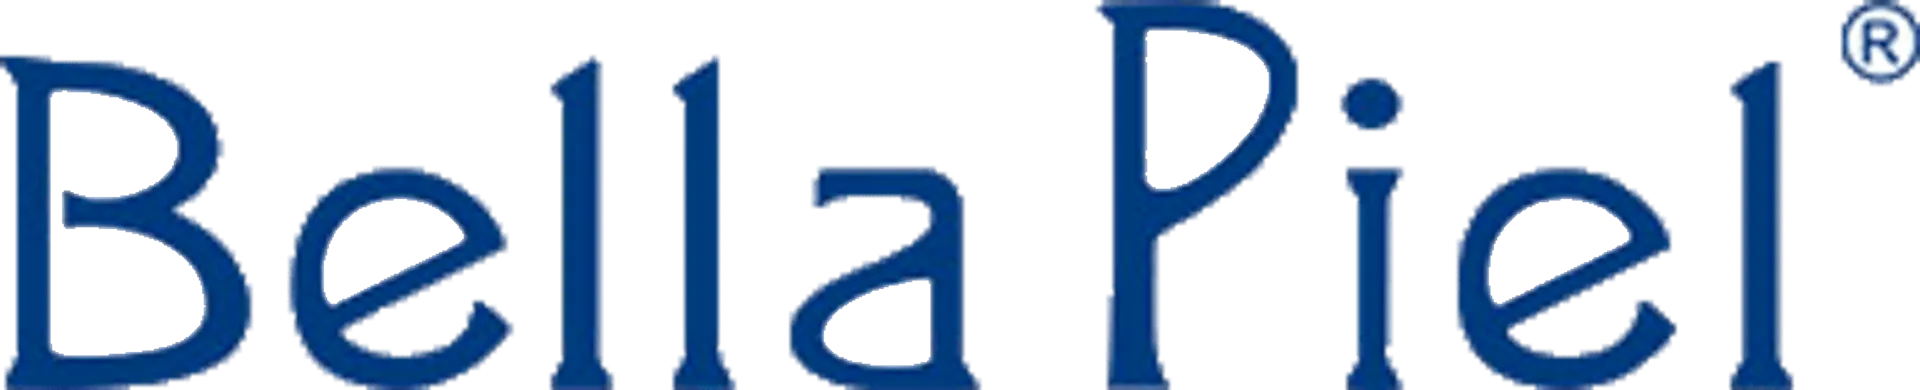 BELLA PIEL logo